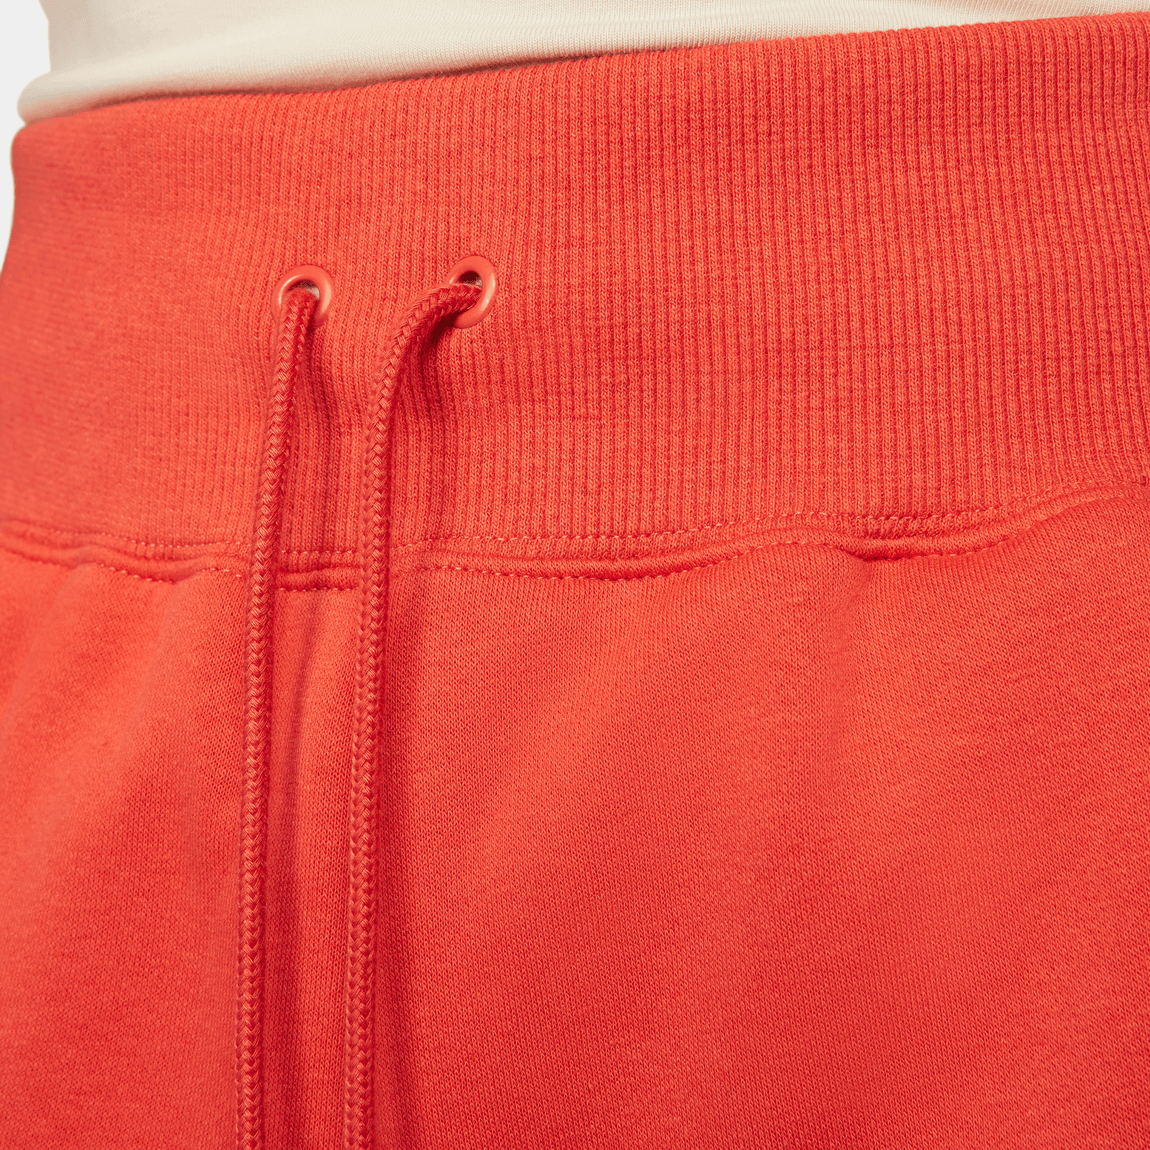 Nike Sportswear Phoenix Fleece Women's Shorts (Mantra Orange/Sail) - Nike Sportswear Phoenix Fleece Women's Shorts (Mantra Orange/Sail) - 